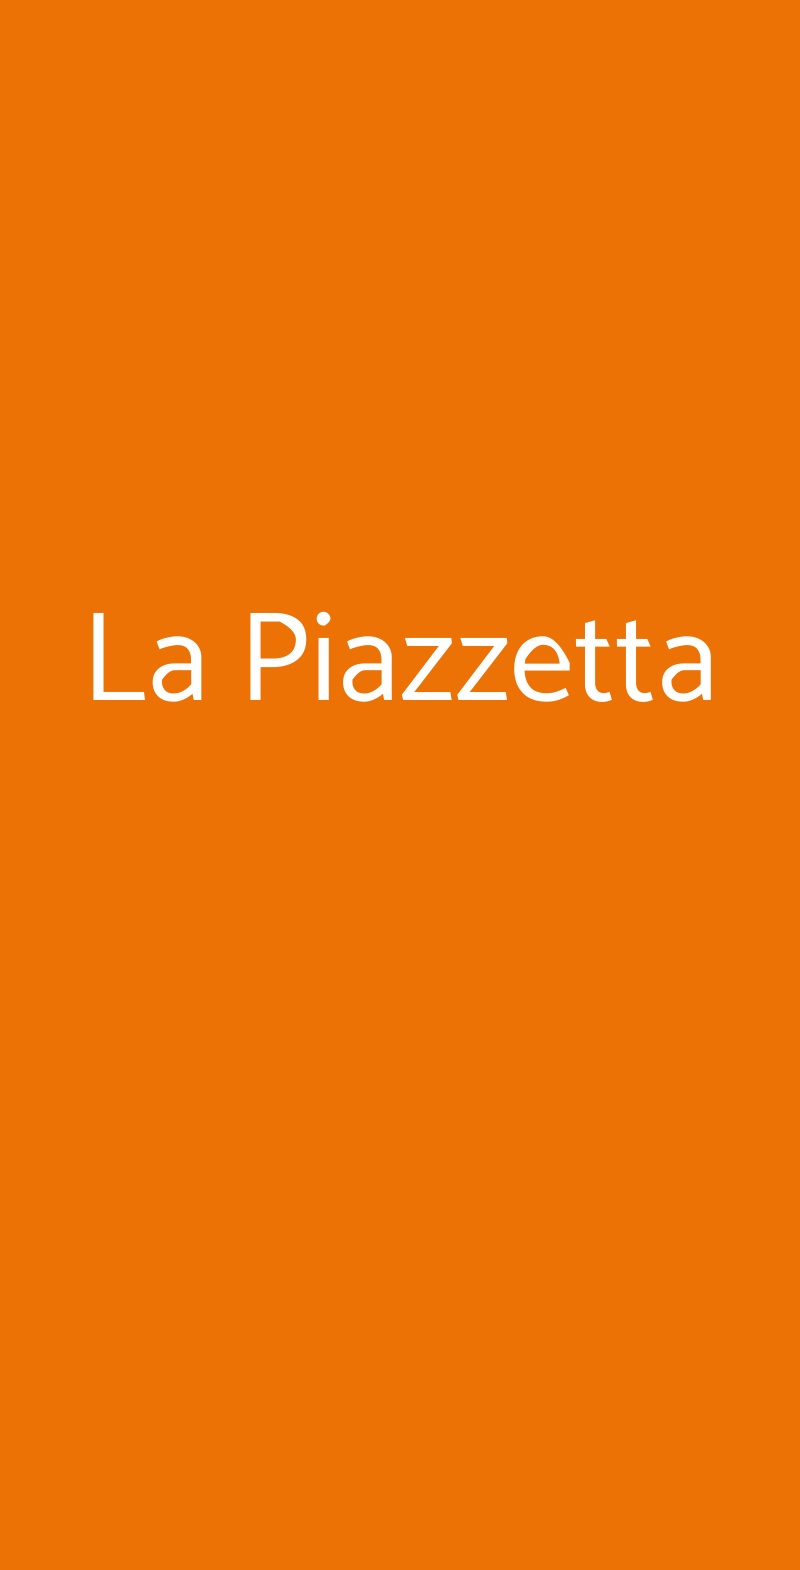 La Piazzetta Milano menù 1 pagina